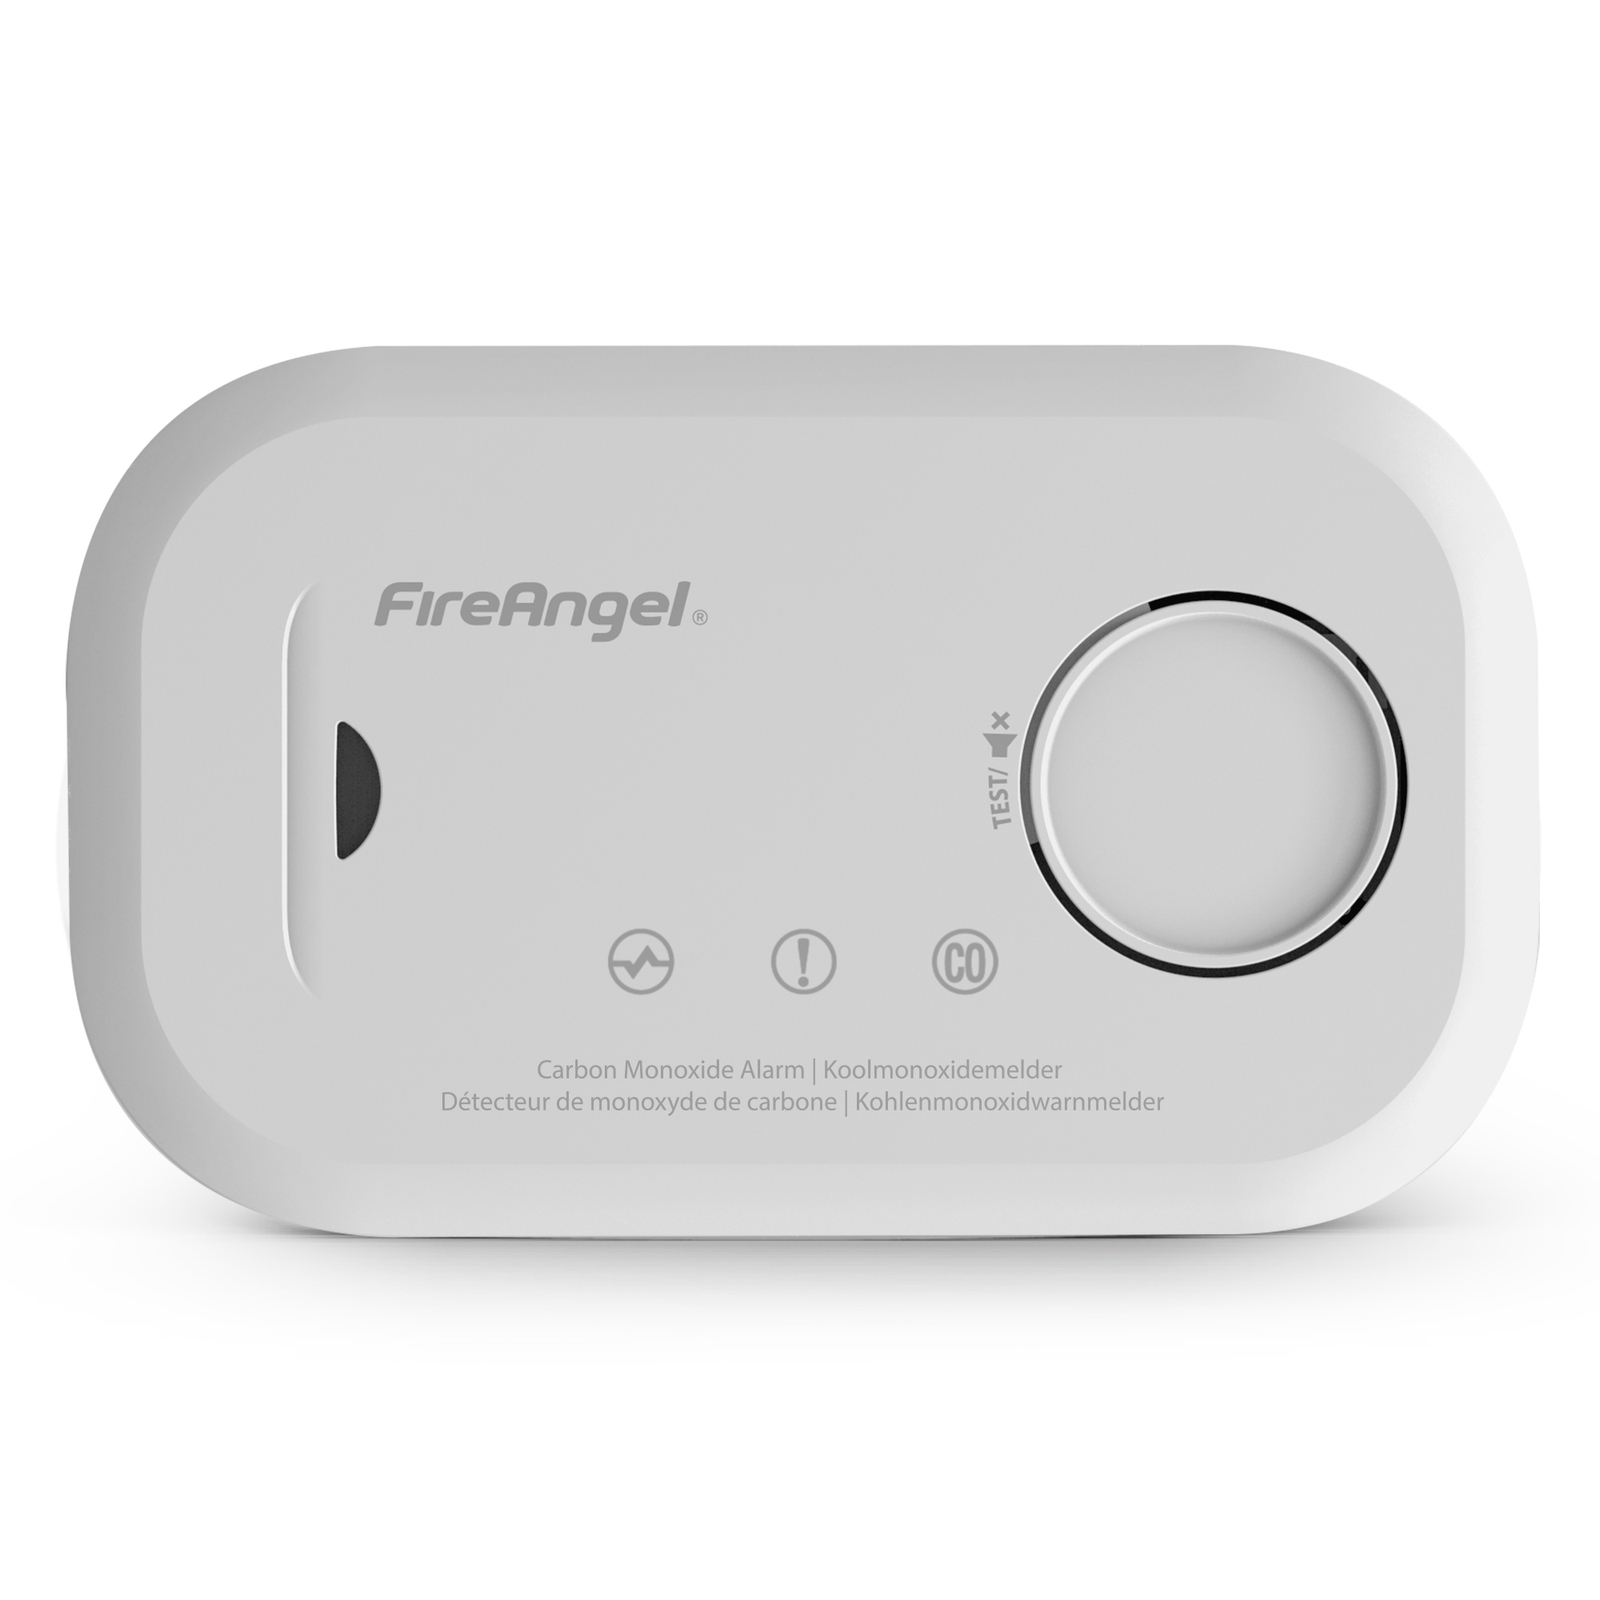 FireAngel Carbon Monoxide Alarm with Replaceable Batteries